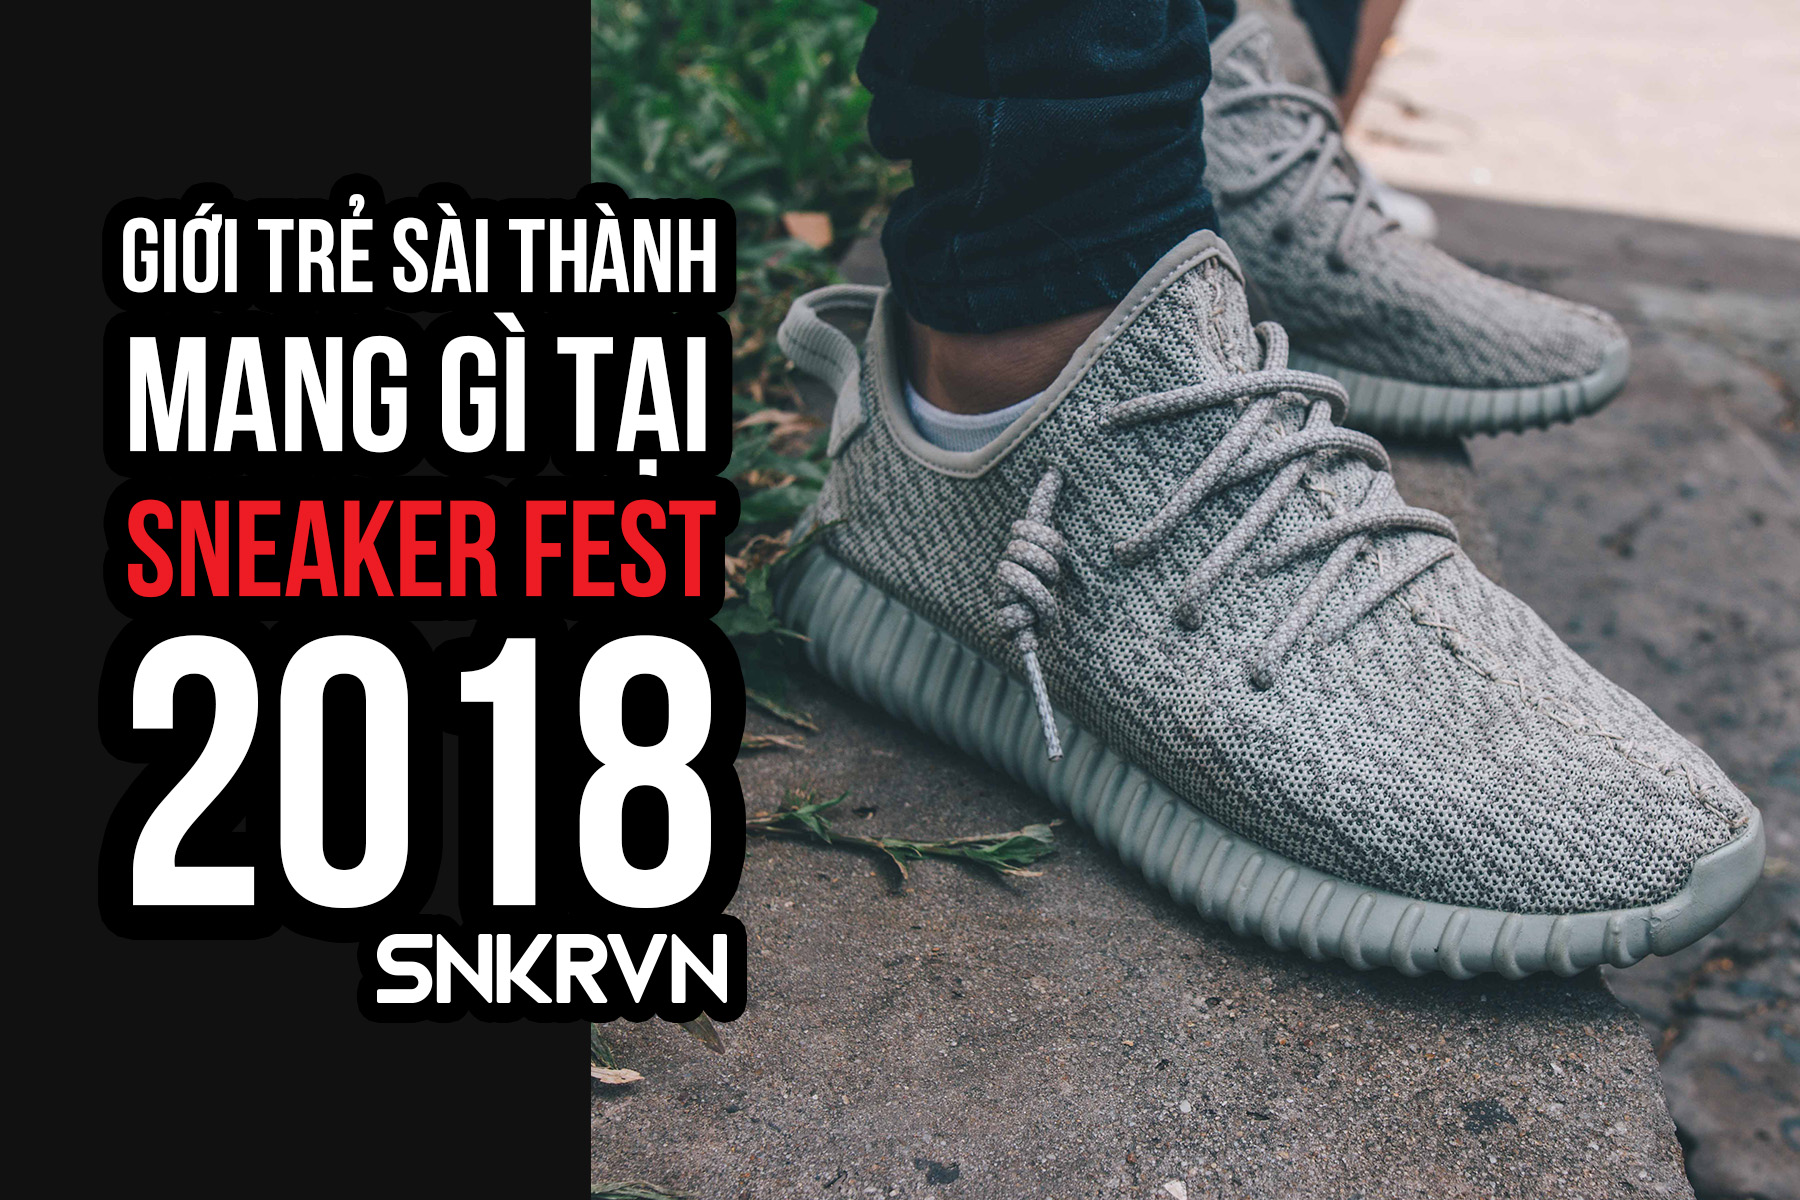 Sneakerfest 2018